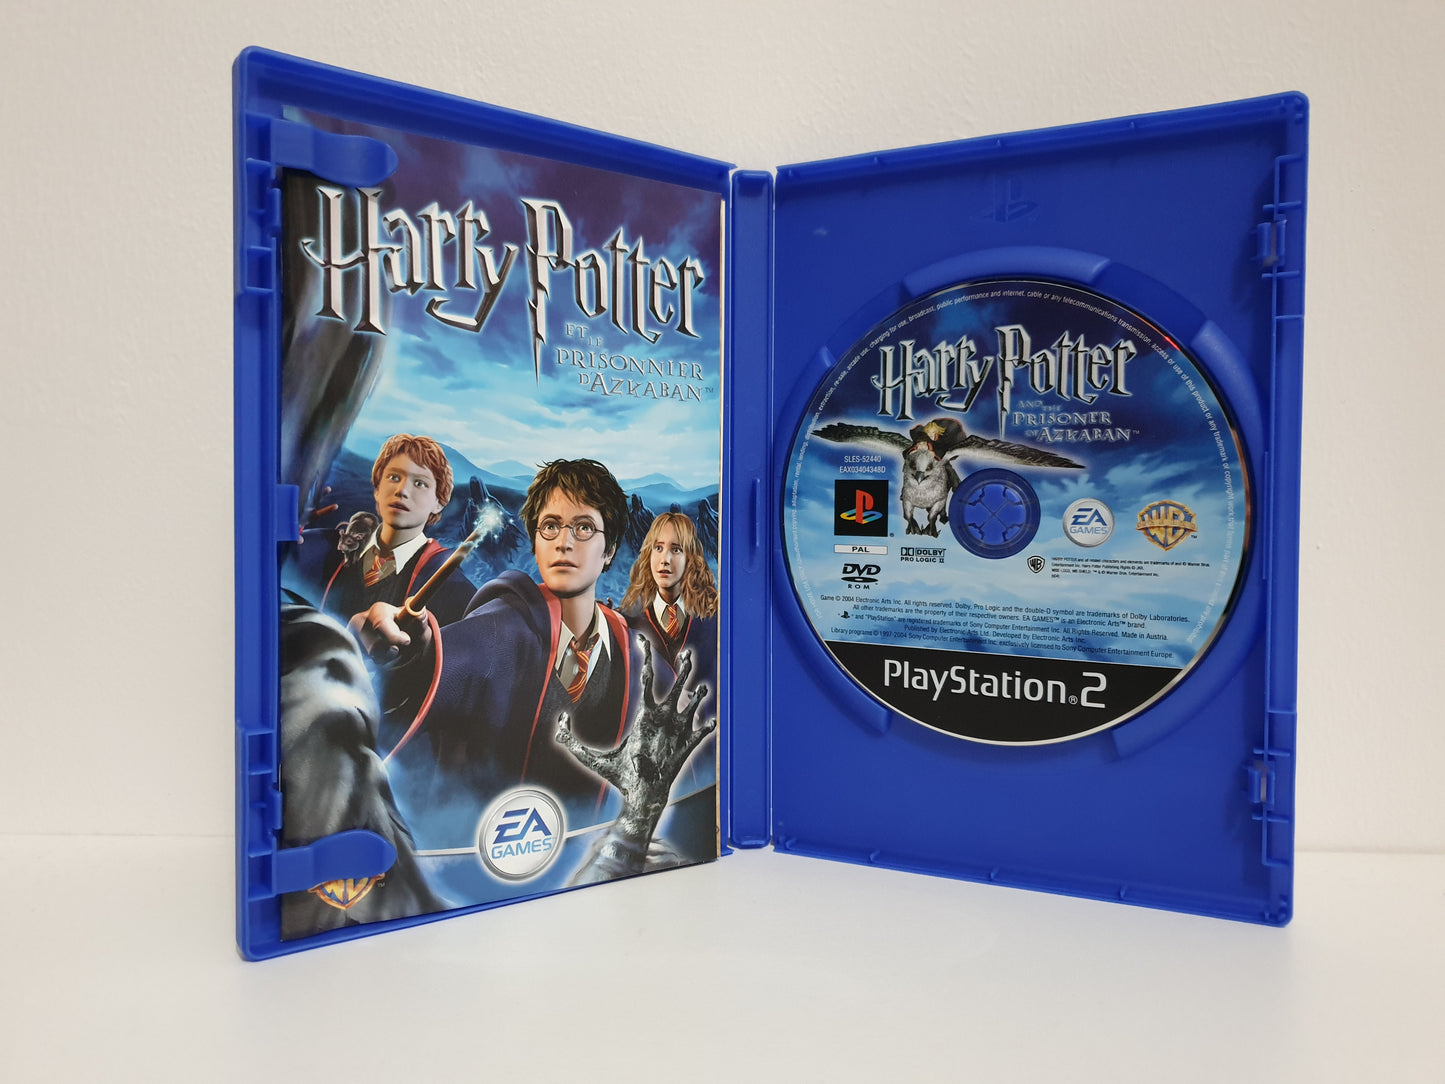 Harry Potter et le Prisonnier d'Azkaban PS2 - Occasion excellent état